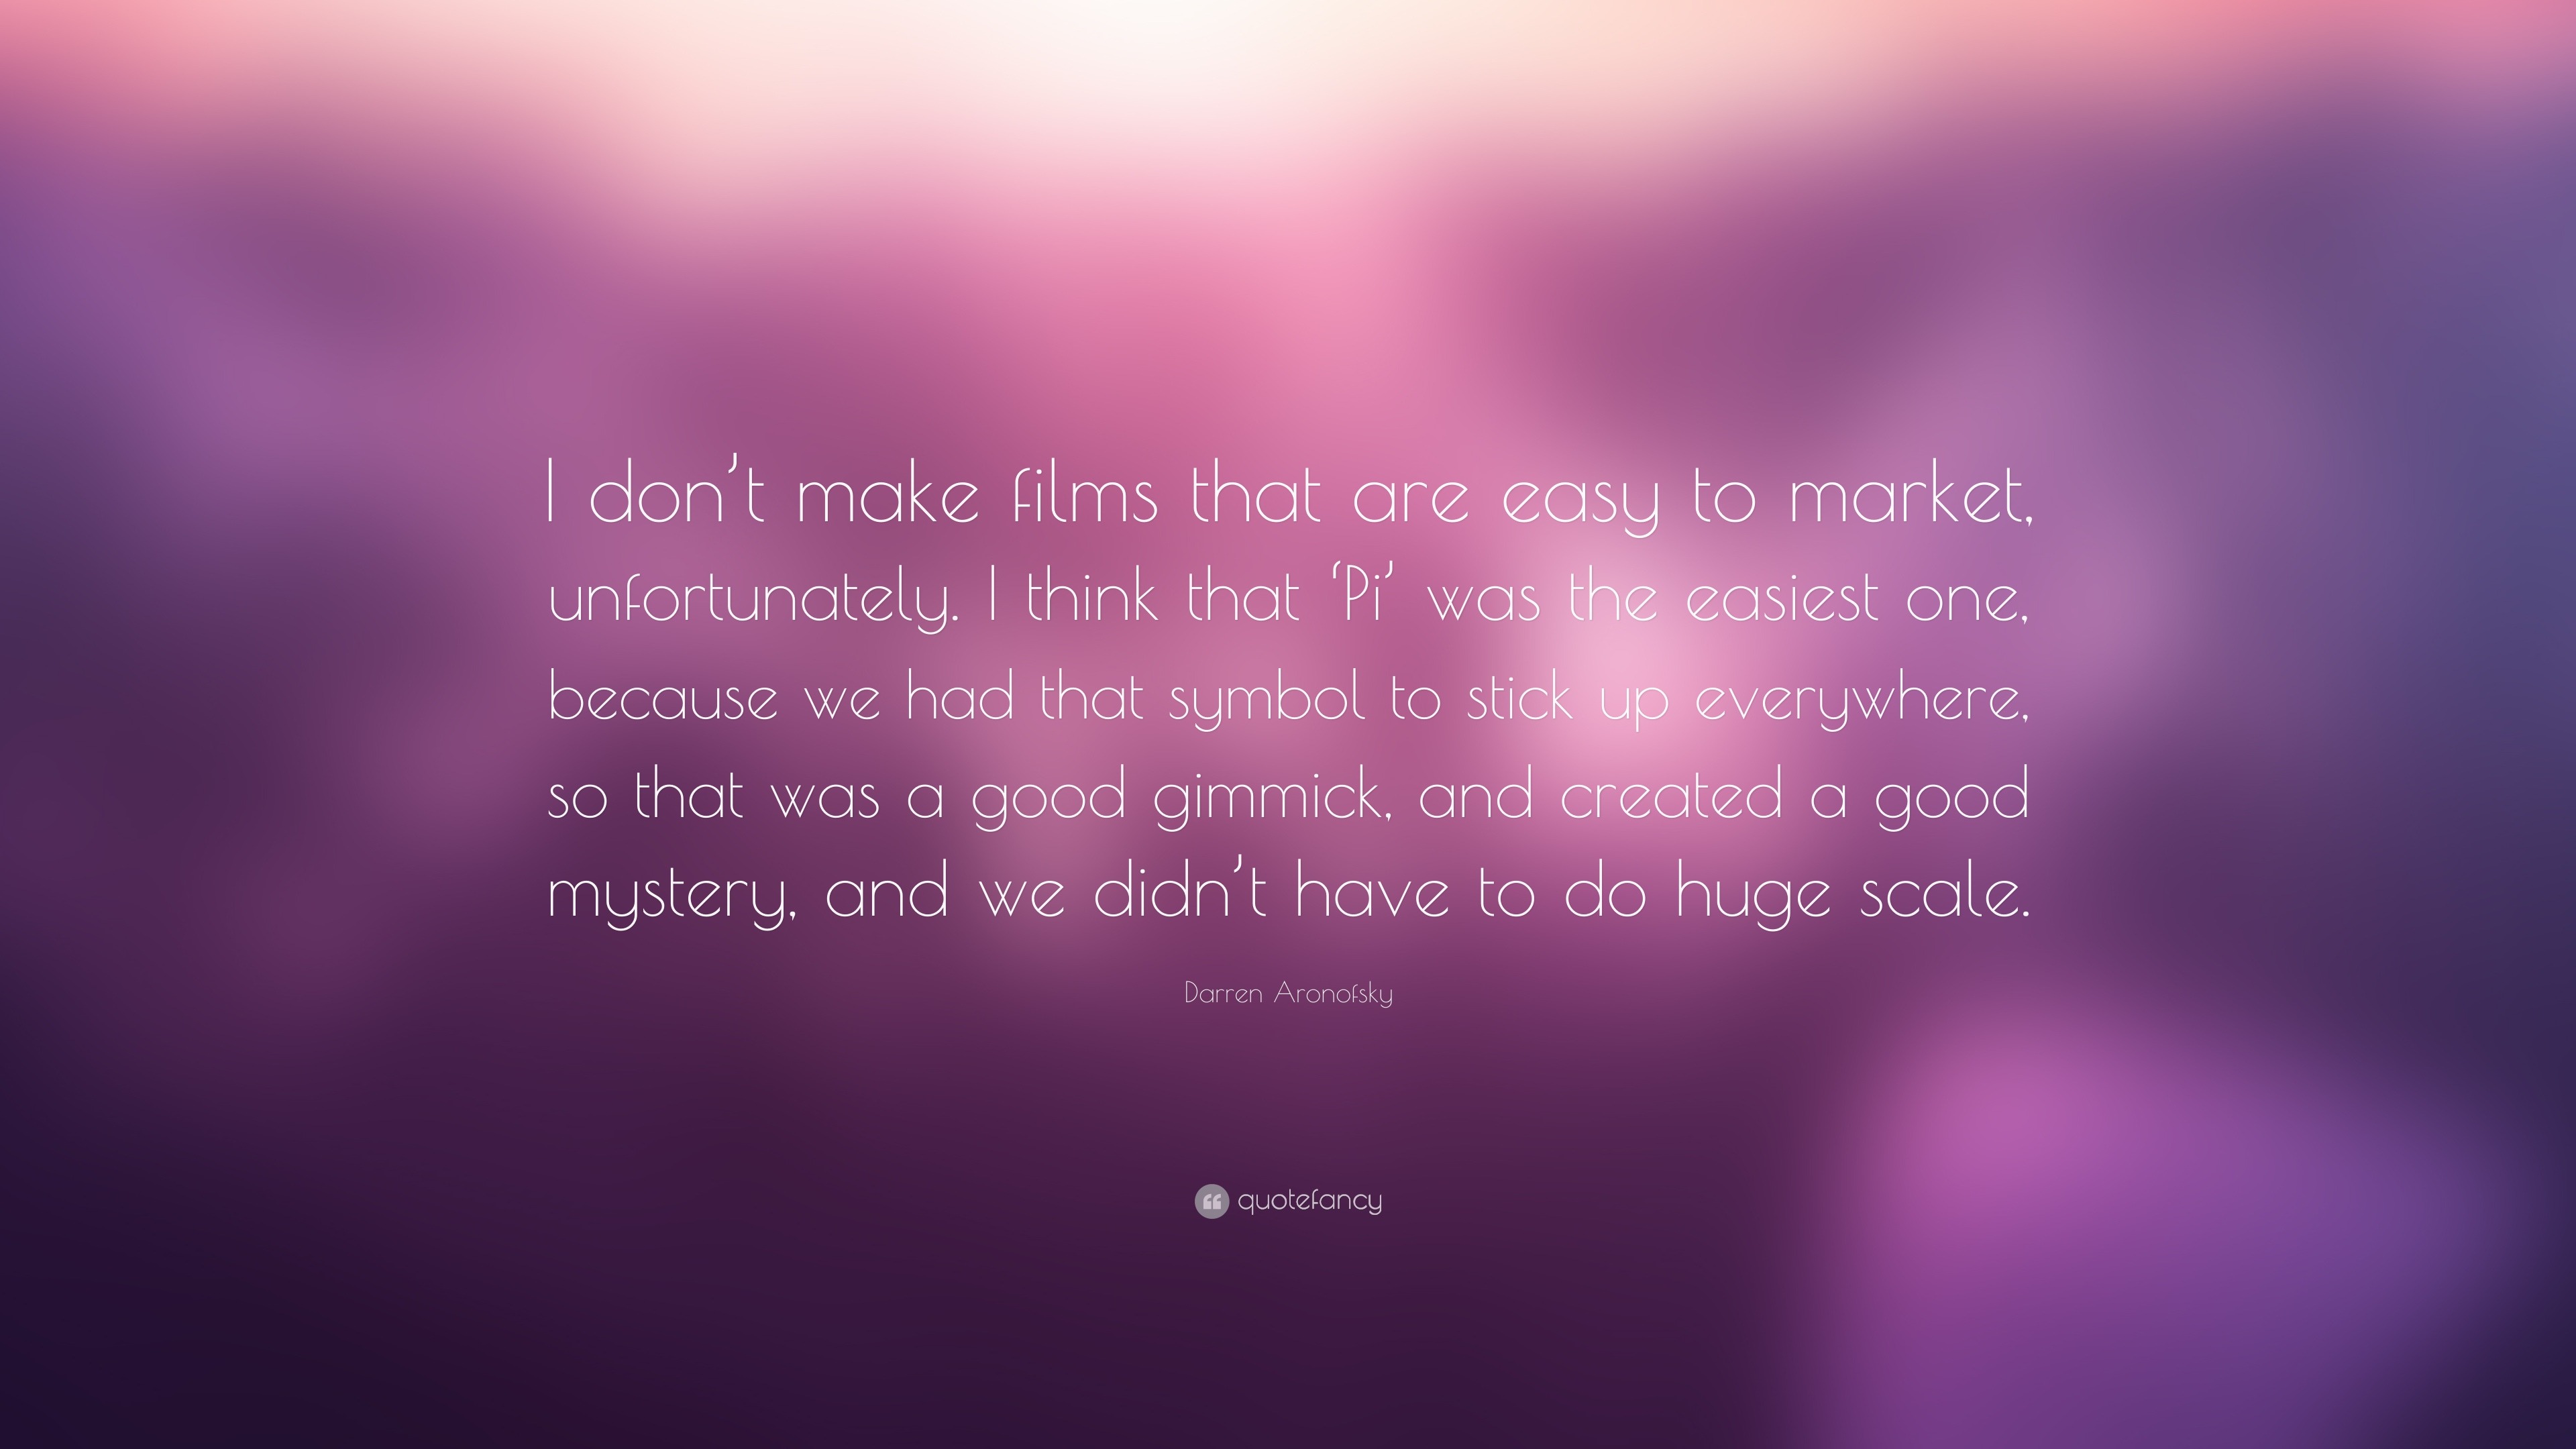 Darren Aronofsky Quotes (29 wallpapers) - Quotefancy